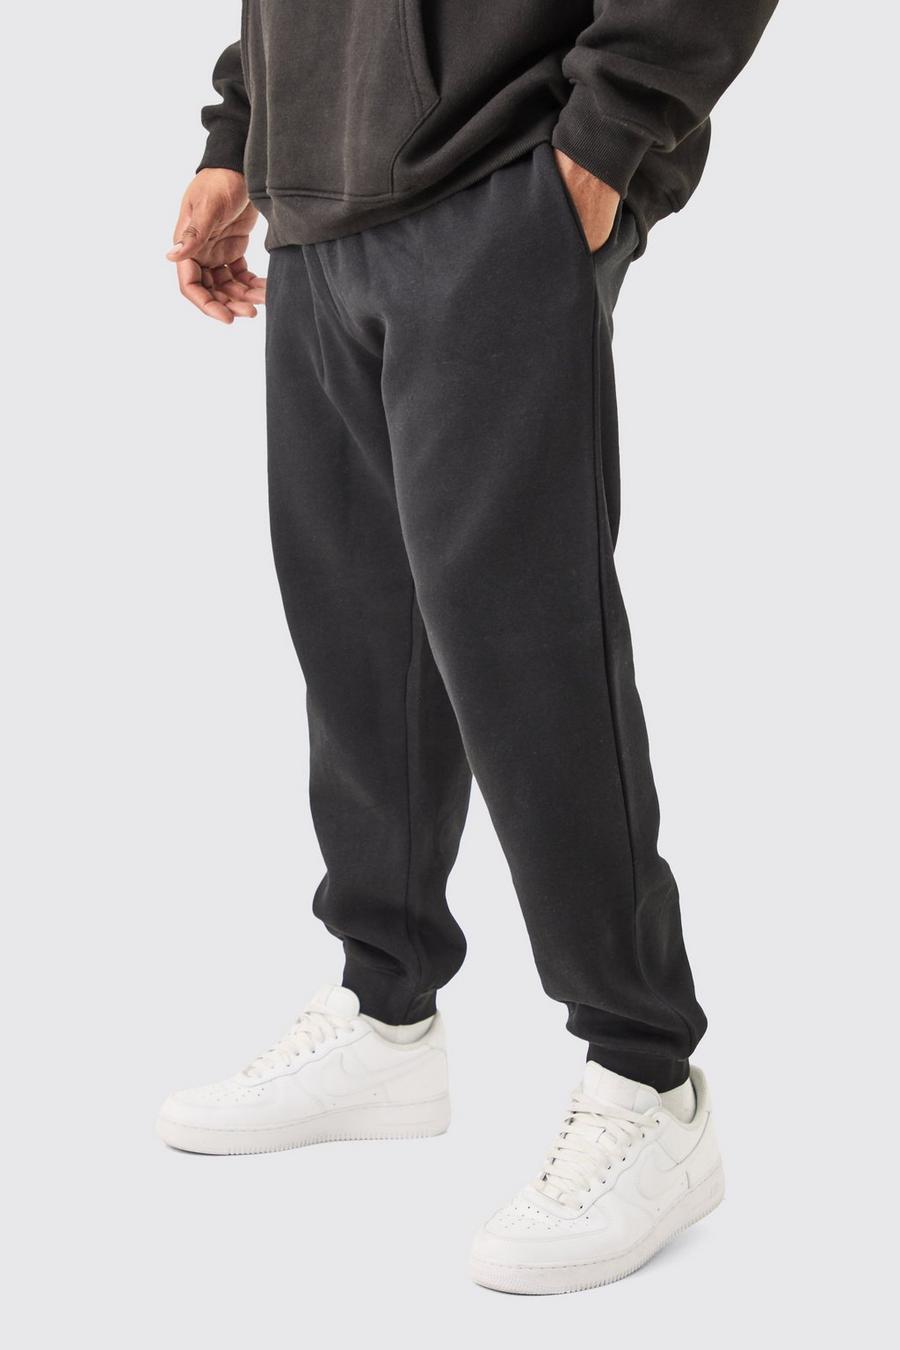 Pantaloni tuta Plus Size Basic Slim Fit neri, Black image number 1